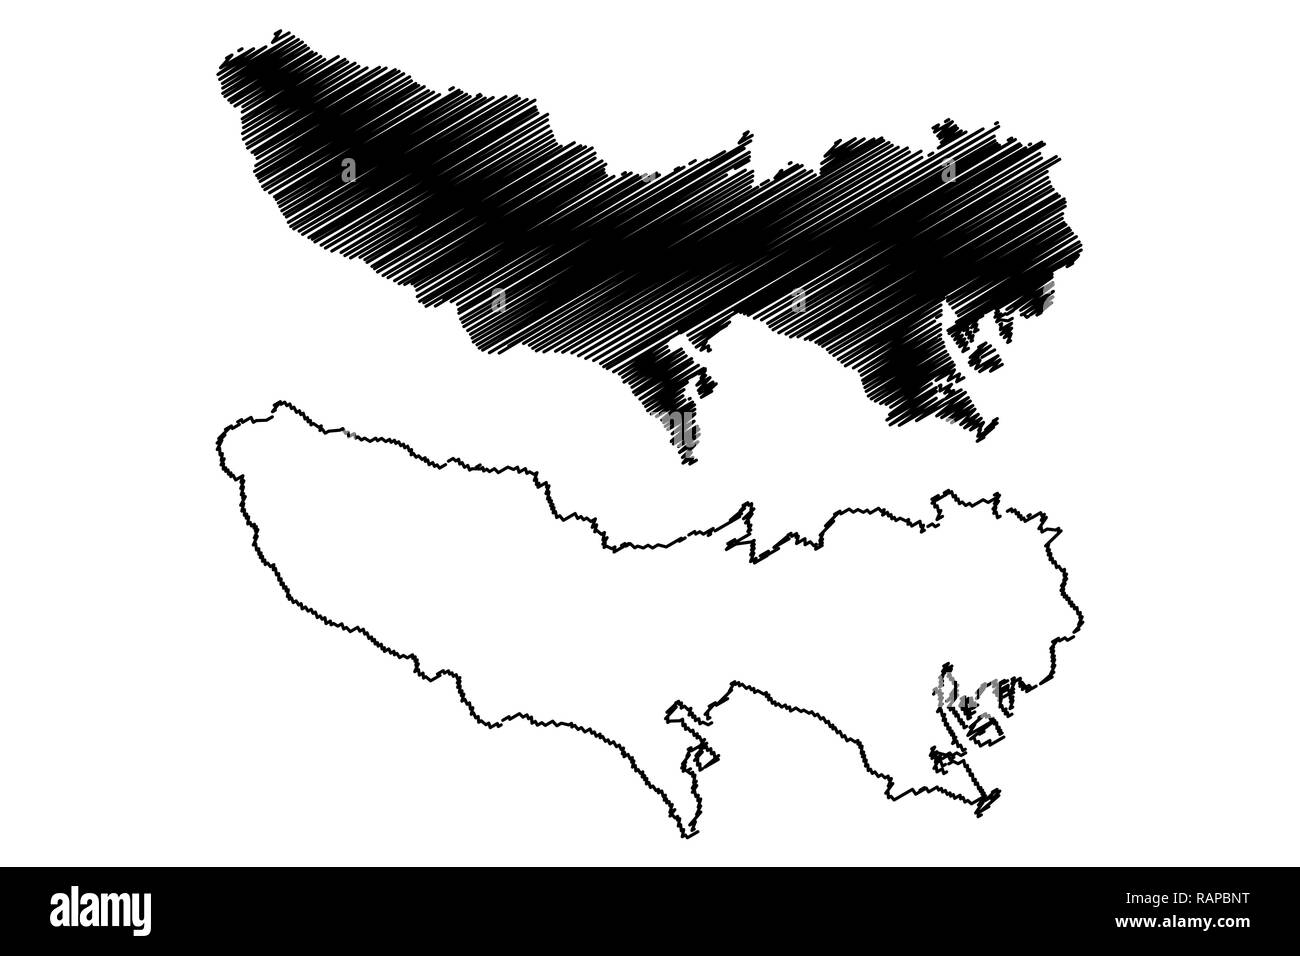 La Préfecture de Tokyo (divisions administratives du Japon, préfectures du Japon) map vector illustration gribouillage, croquis métropole de Tokyo (Tokyo plus Ar Illustration de Vecteur